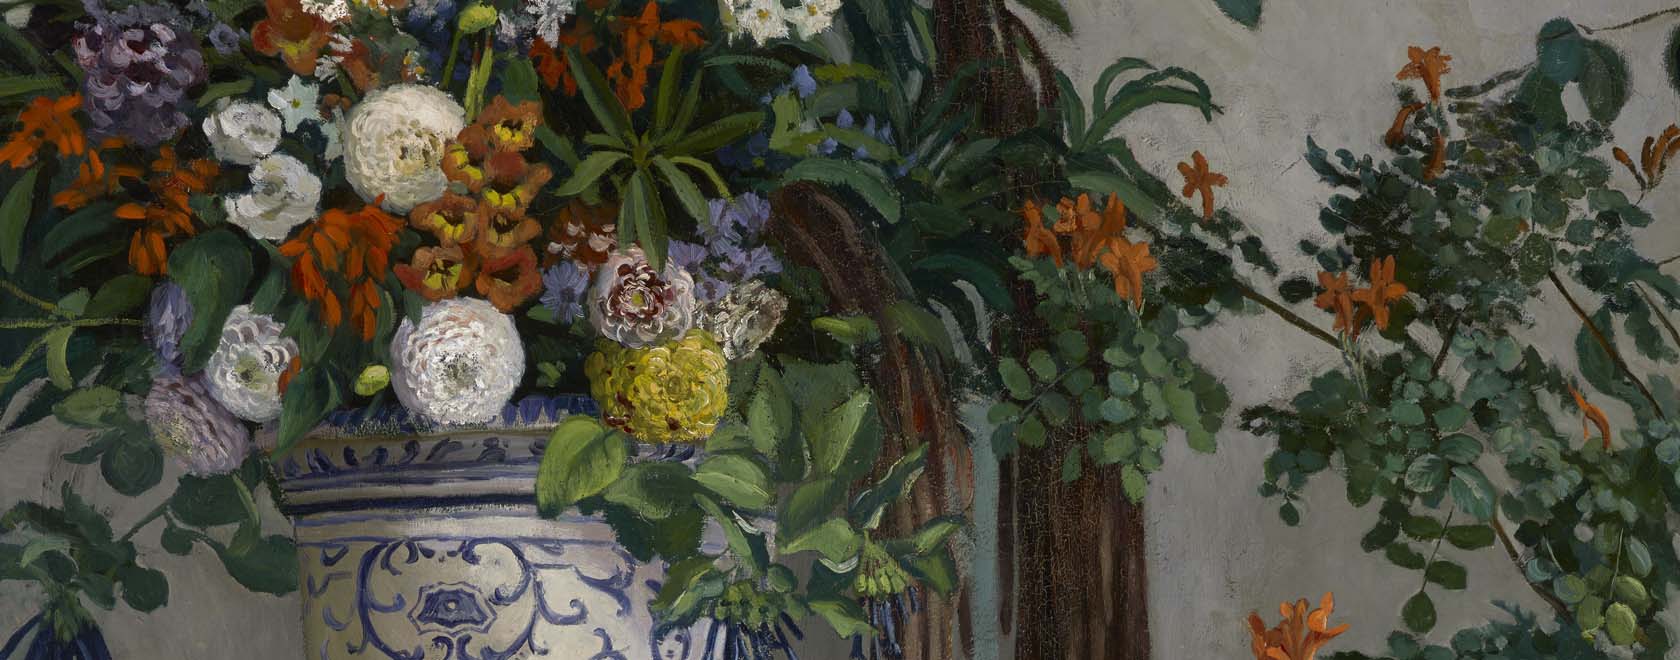 Vase de fleurs grenoble - Frédéric Bazille - Grenoble, musée de grenoble